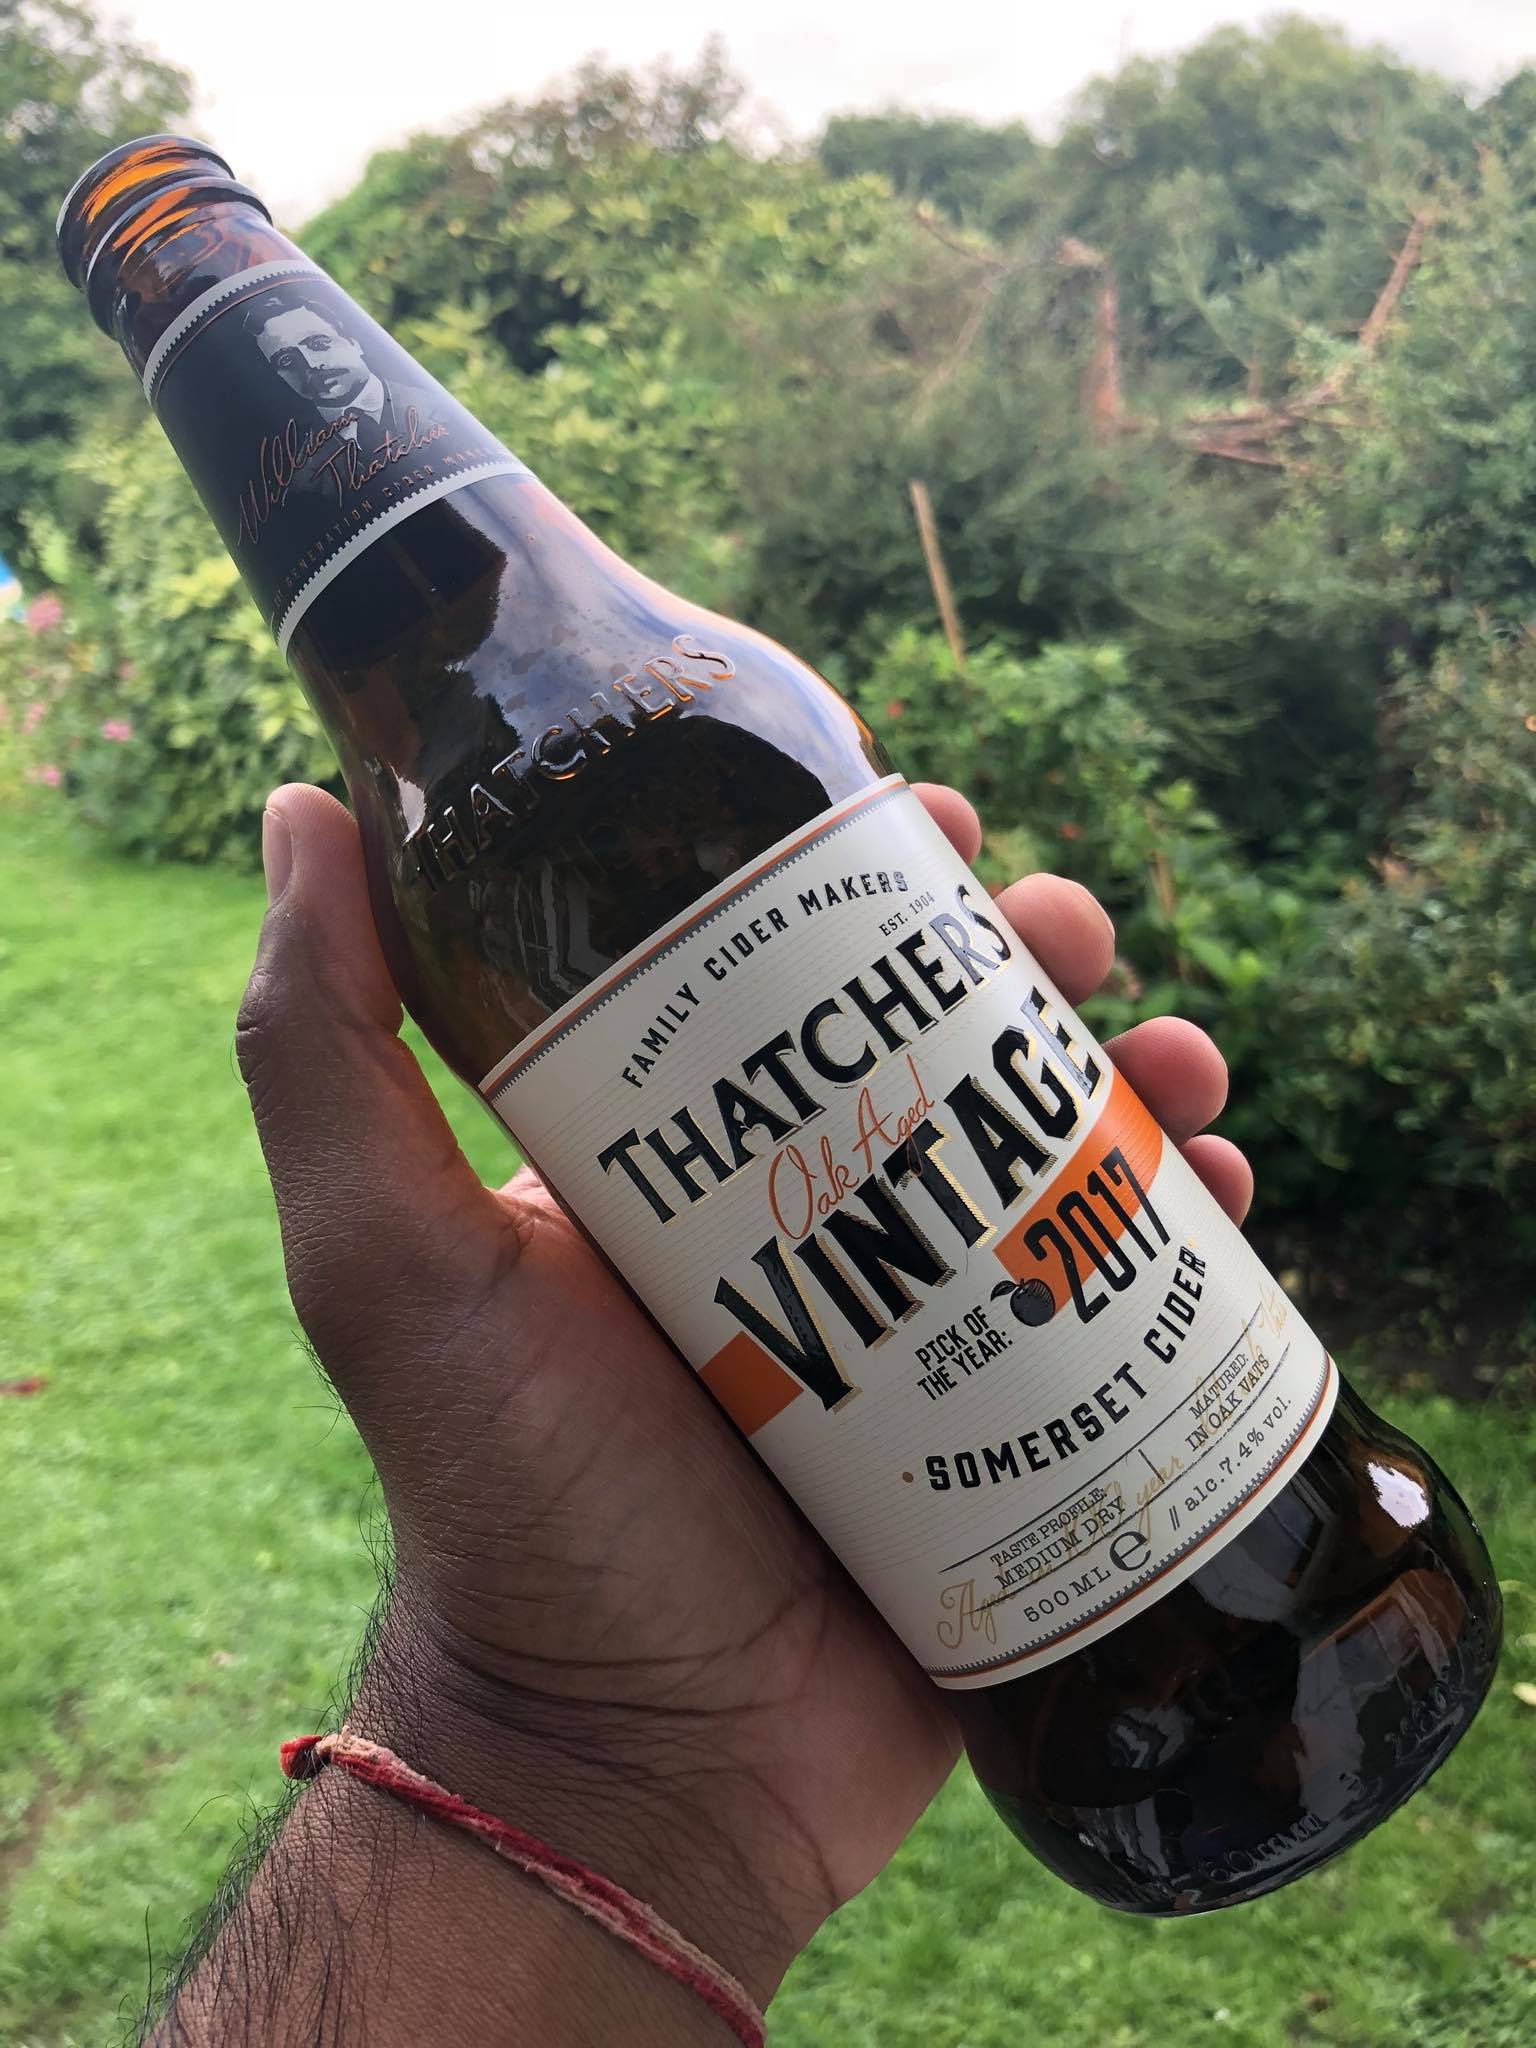 Thatchers Oak Aged Vintage Cider
